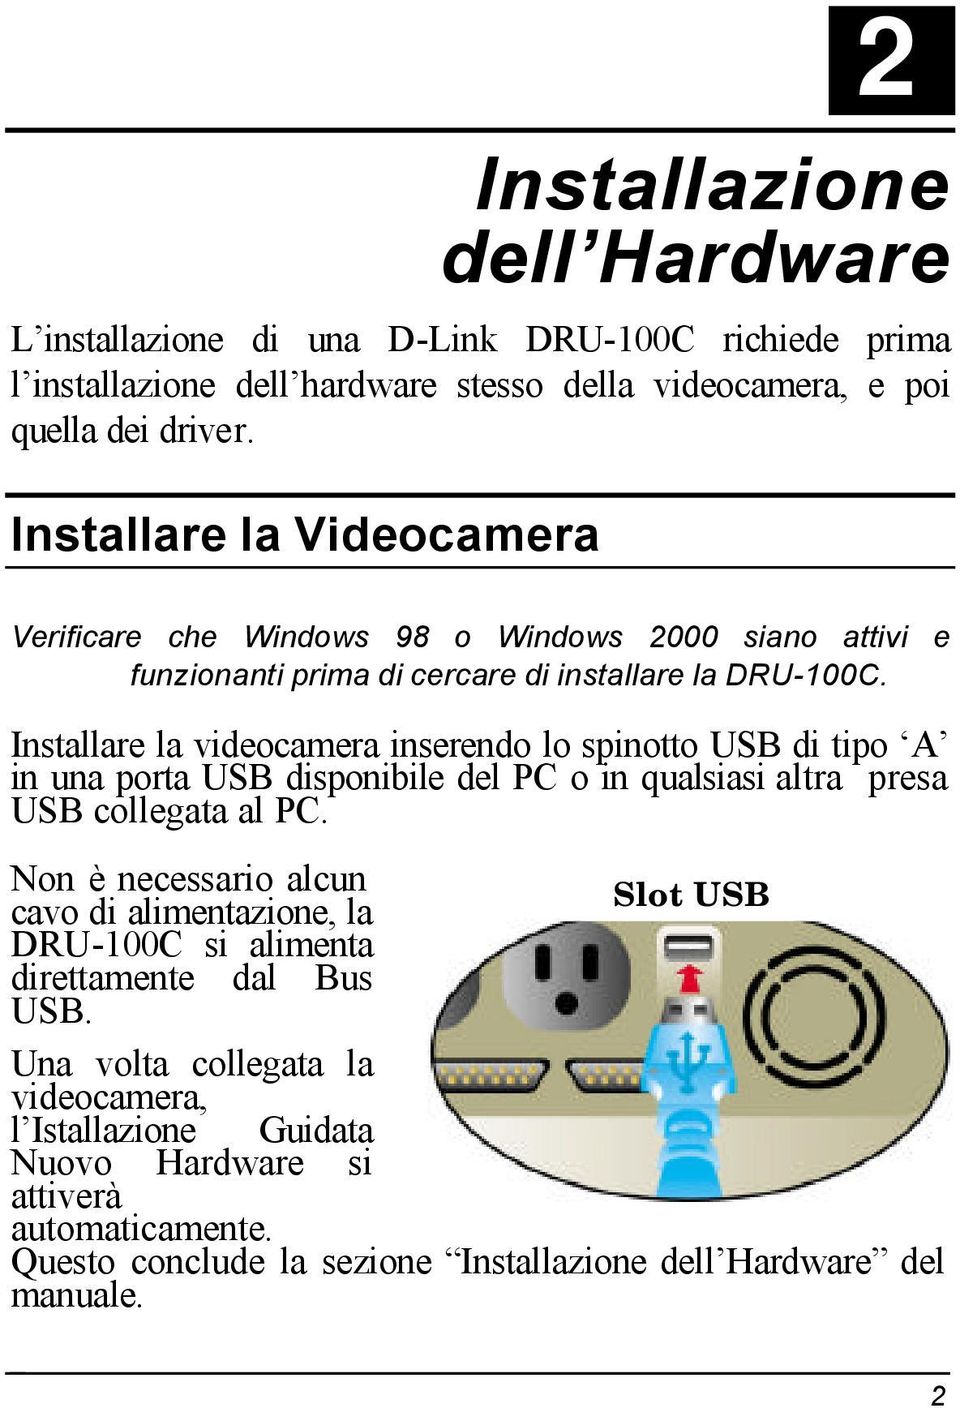 Installare la videocamera inserendo lo spinotto USB di tipo A in una porta USB disponibile del PC o in qualsiasi altra presa USB collegata al PC.